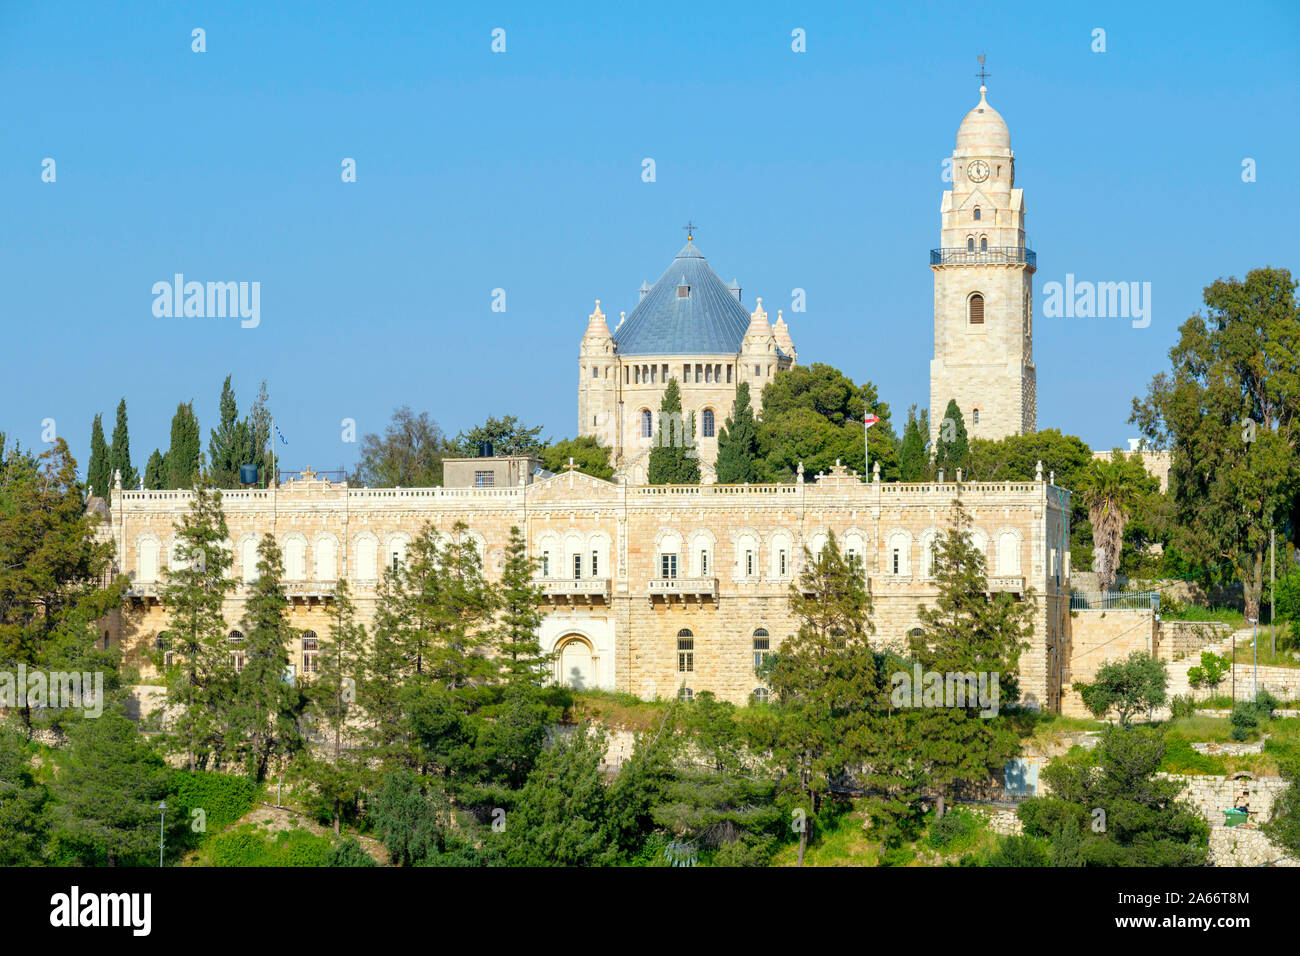 Dormition Abbey on Mount Zion, Old City, Jerusalem, Israel. Stock Photo